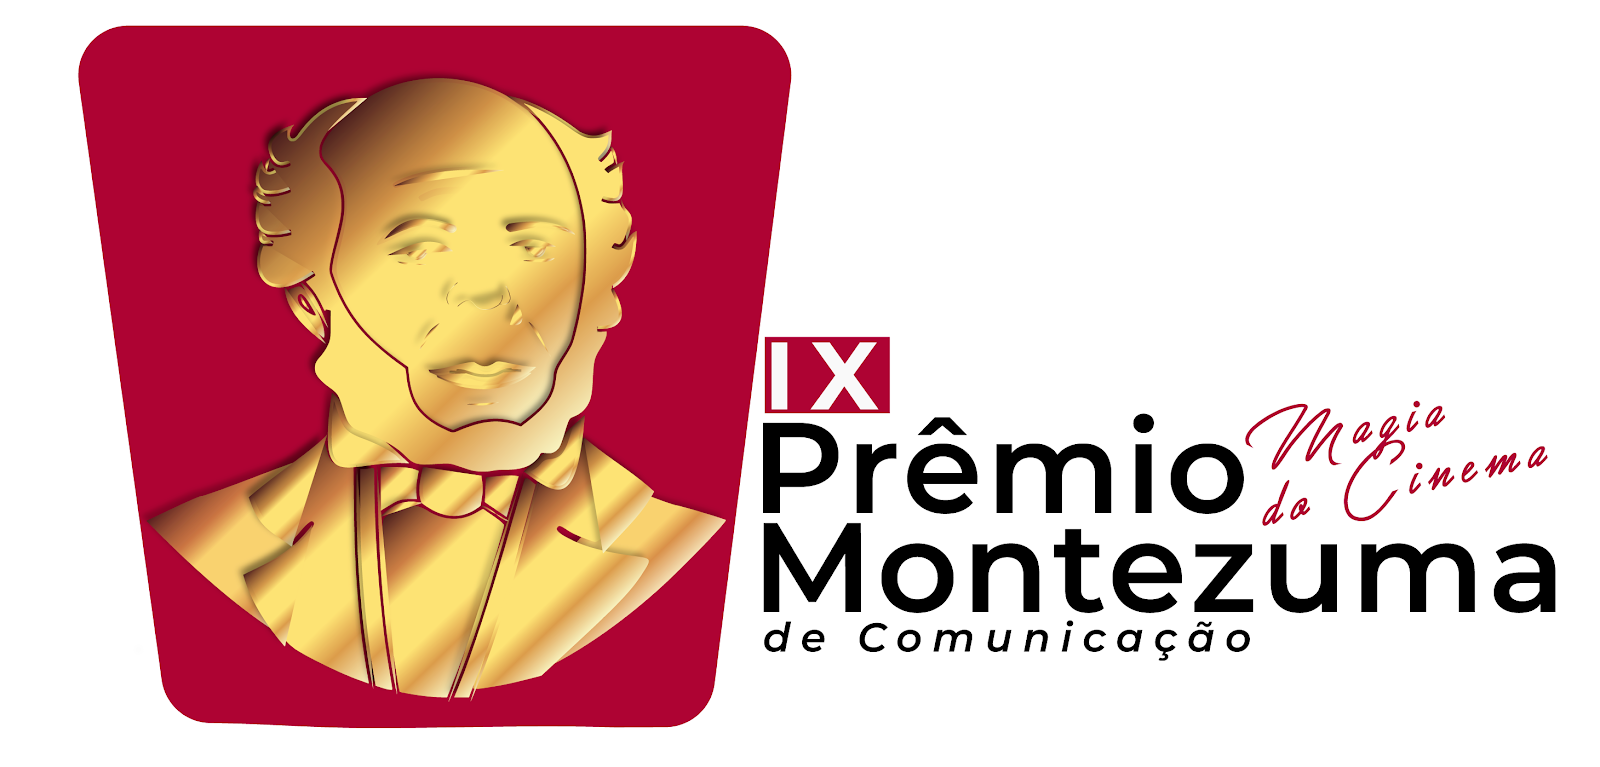 Prêmio Francisco Montezuma de Comunicação 